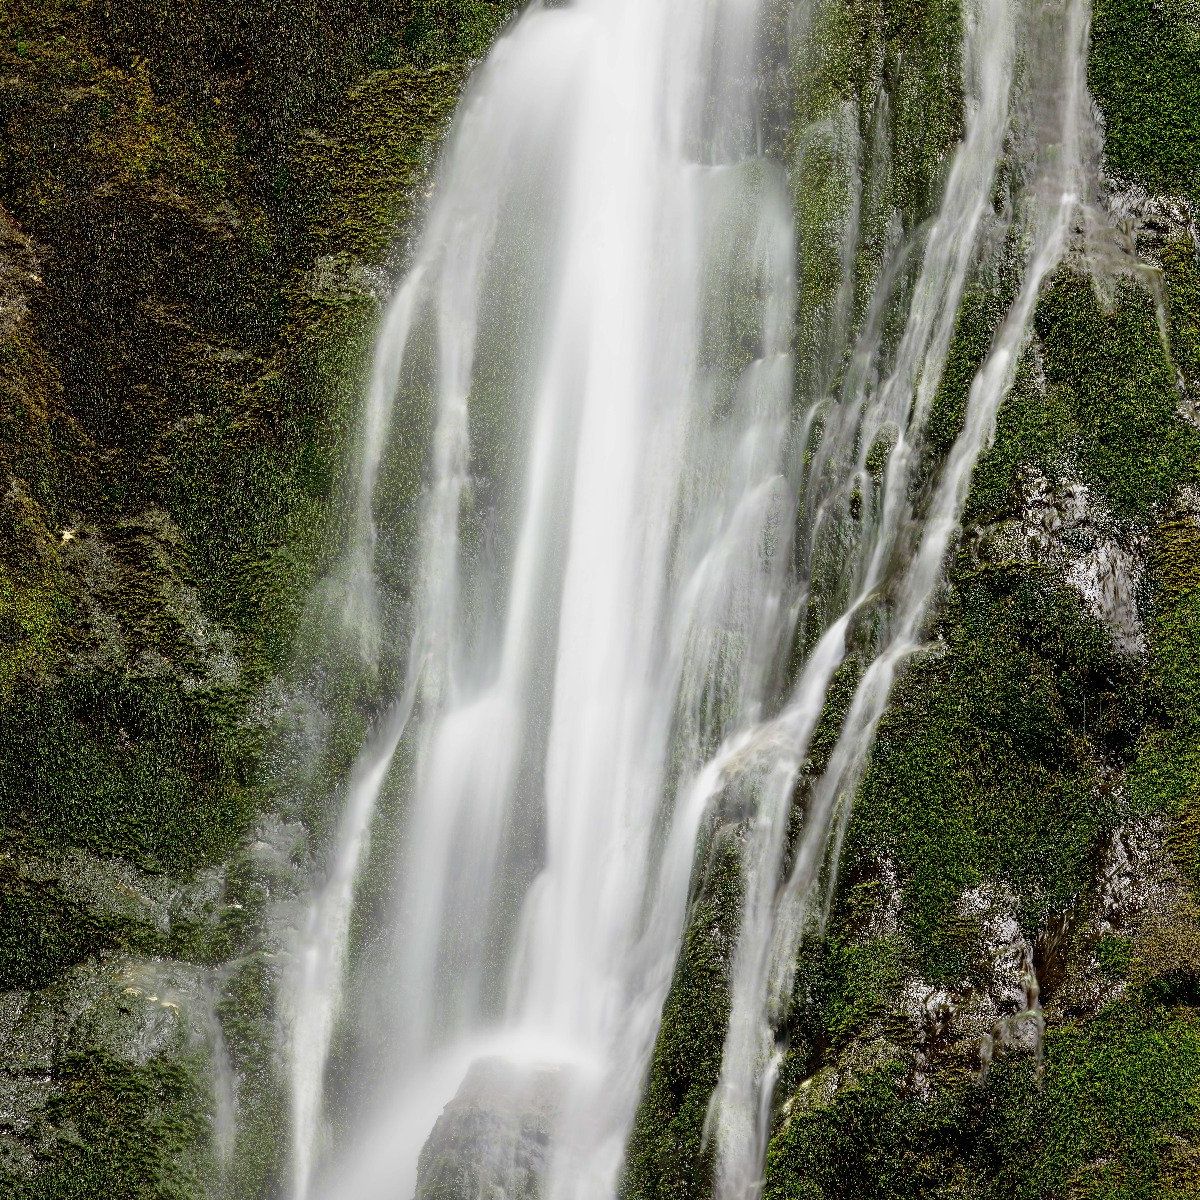 Wasserfall mit Moos